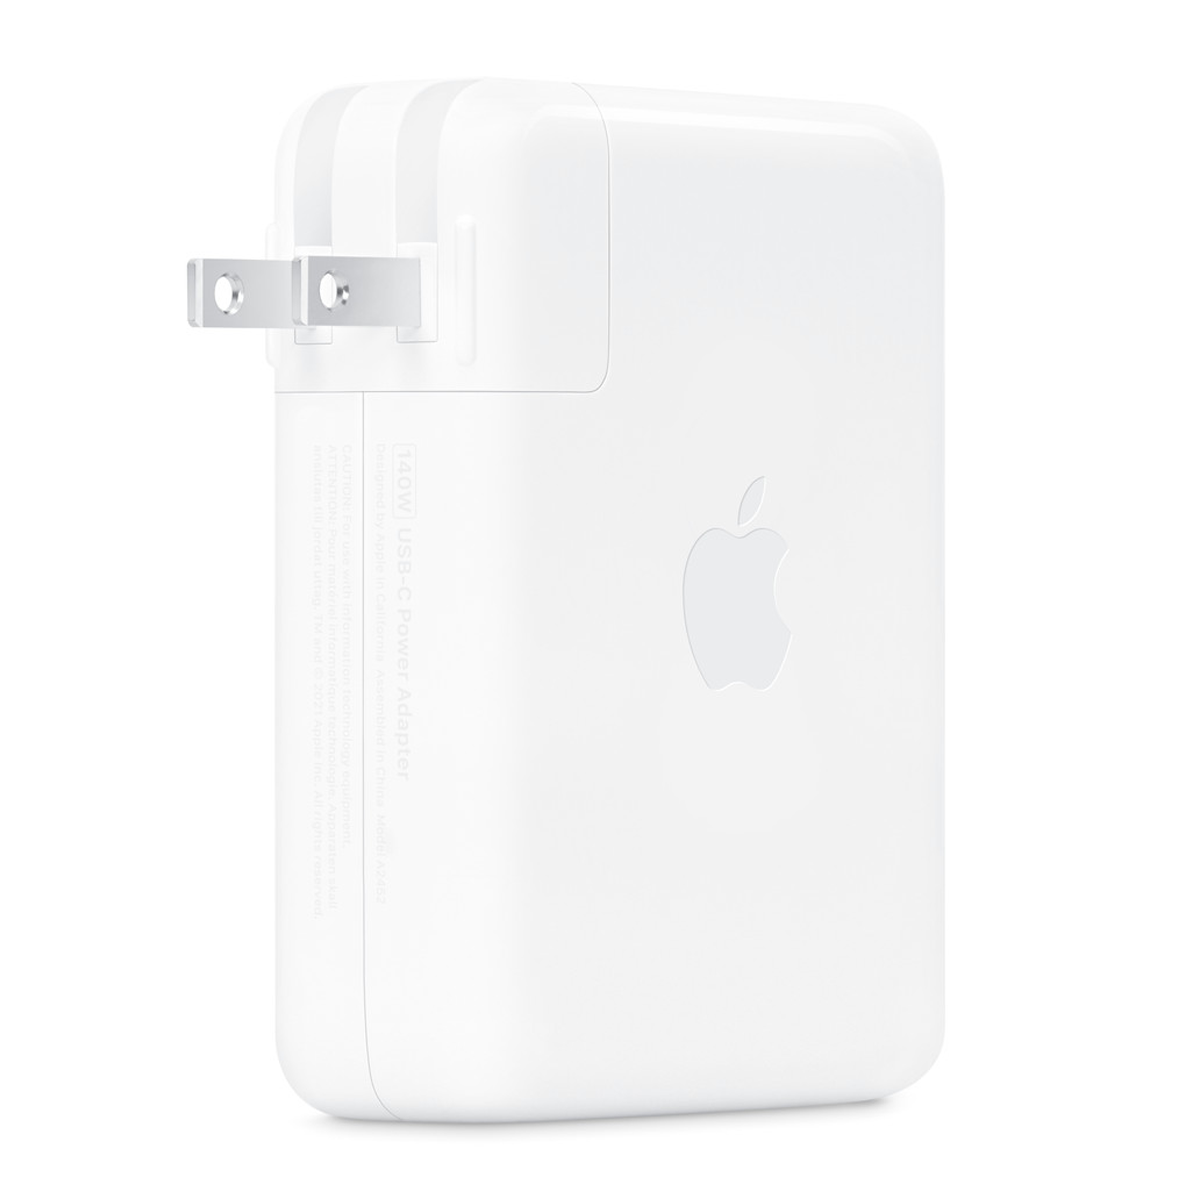 شارژر دیواری اپل مدل USB-C توان 140 وات-small-image